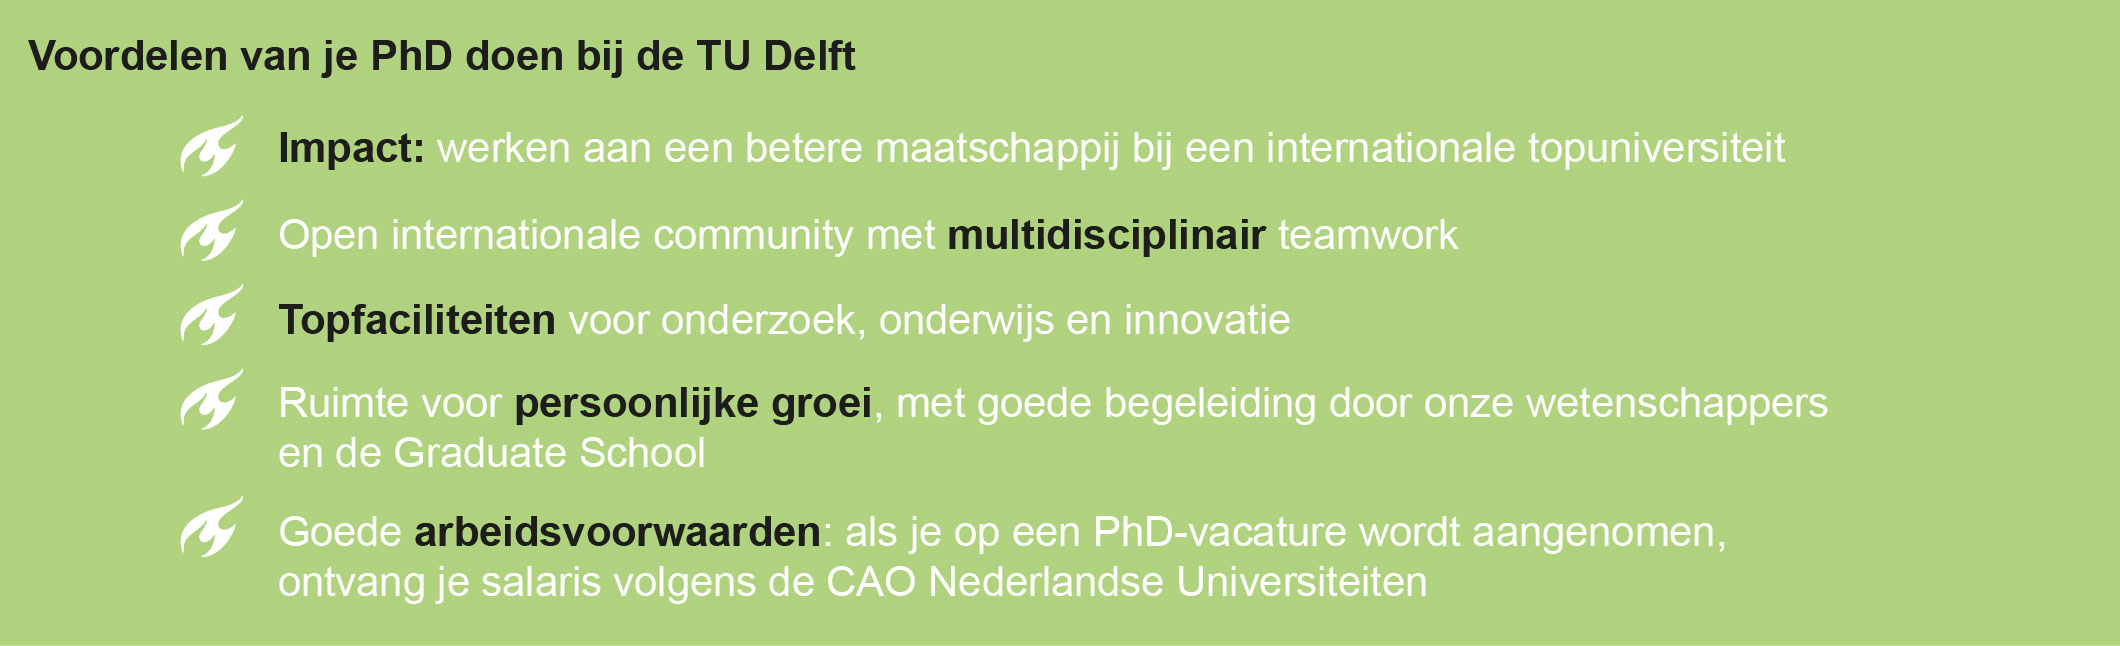 Voordelen van je PhD doen bij de TU Delft